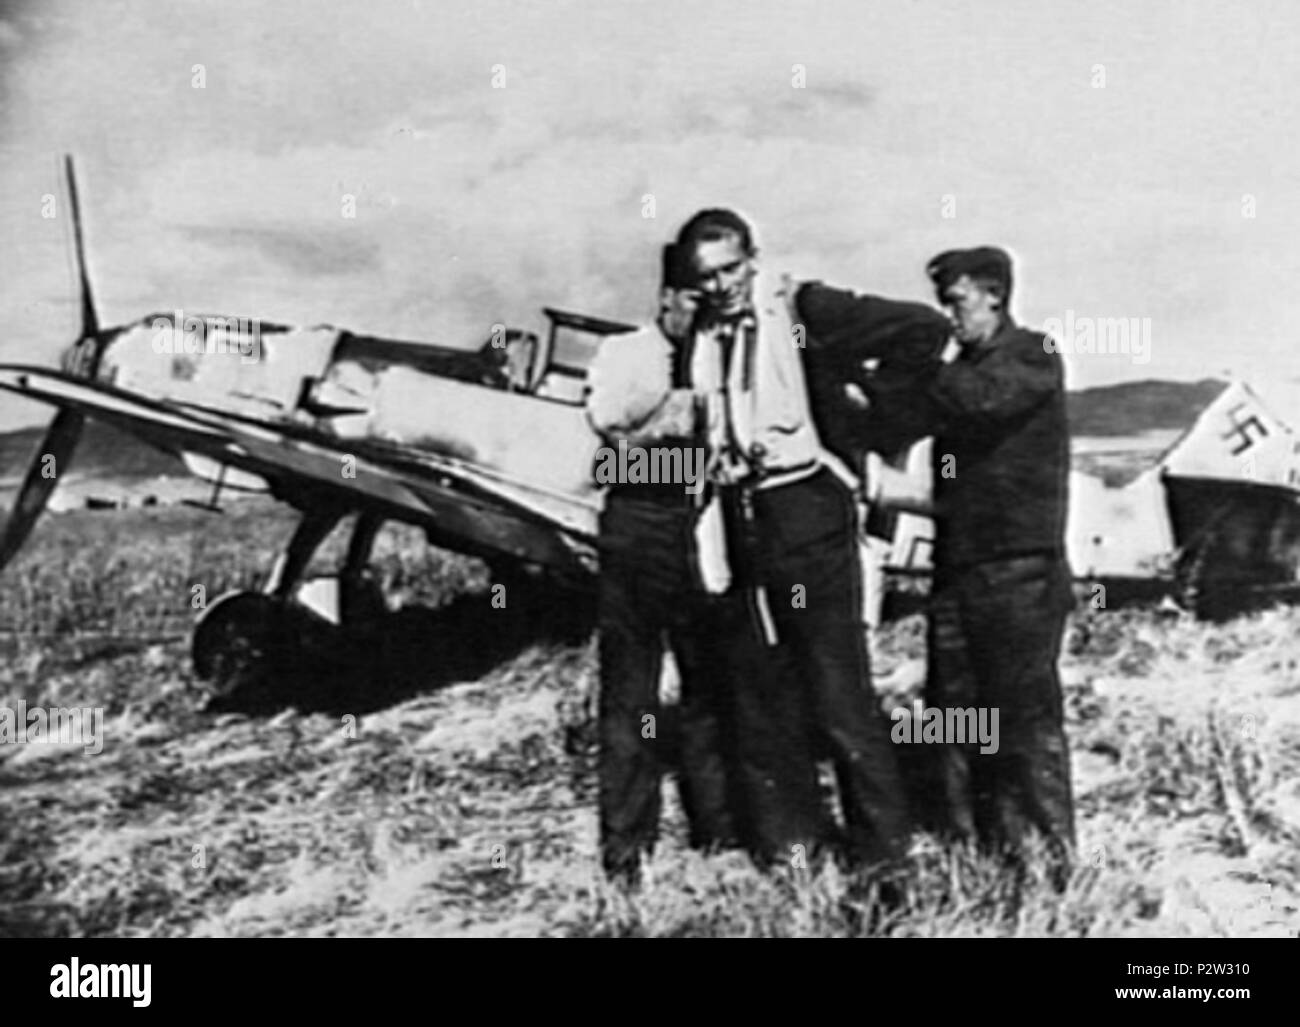 . Deutsche Luftwaffe Pilot Erbo Graf von Kageneck, Inhaber des Ritterkreuzes des Eisernen Kreuzes mit Eichenlaub, stand vor seiner Messerschmitt Me 109 E in Sizilien, Italien, unterstützt von zwei bodenpersonal Personal. Von Kageneck, die verantwortlich sind für die Zerstörung von 69 Flugzeugen der alliierten Streitkräfte, wurde später abgeschossen von raaf Piloten, Flying Officer Clive R. Caldwell, (wer zu 250 Squadron befestigt war, Royal Air Force) am Nachmittag des 24. Dezember 1941 in der Nähe von Derna in Libyen. Kageneck starb später im Flug zu einem Krankenhaus in Neapel am 12. Januar 1942. 1941. Unbekannt 26 Erbo Graf von Kageneck mit Stockfoto